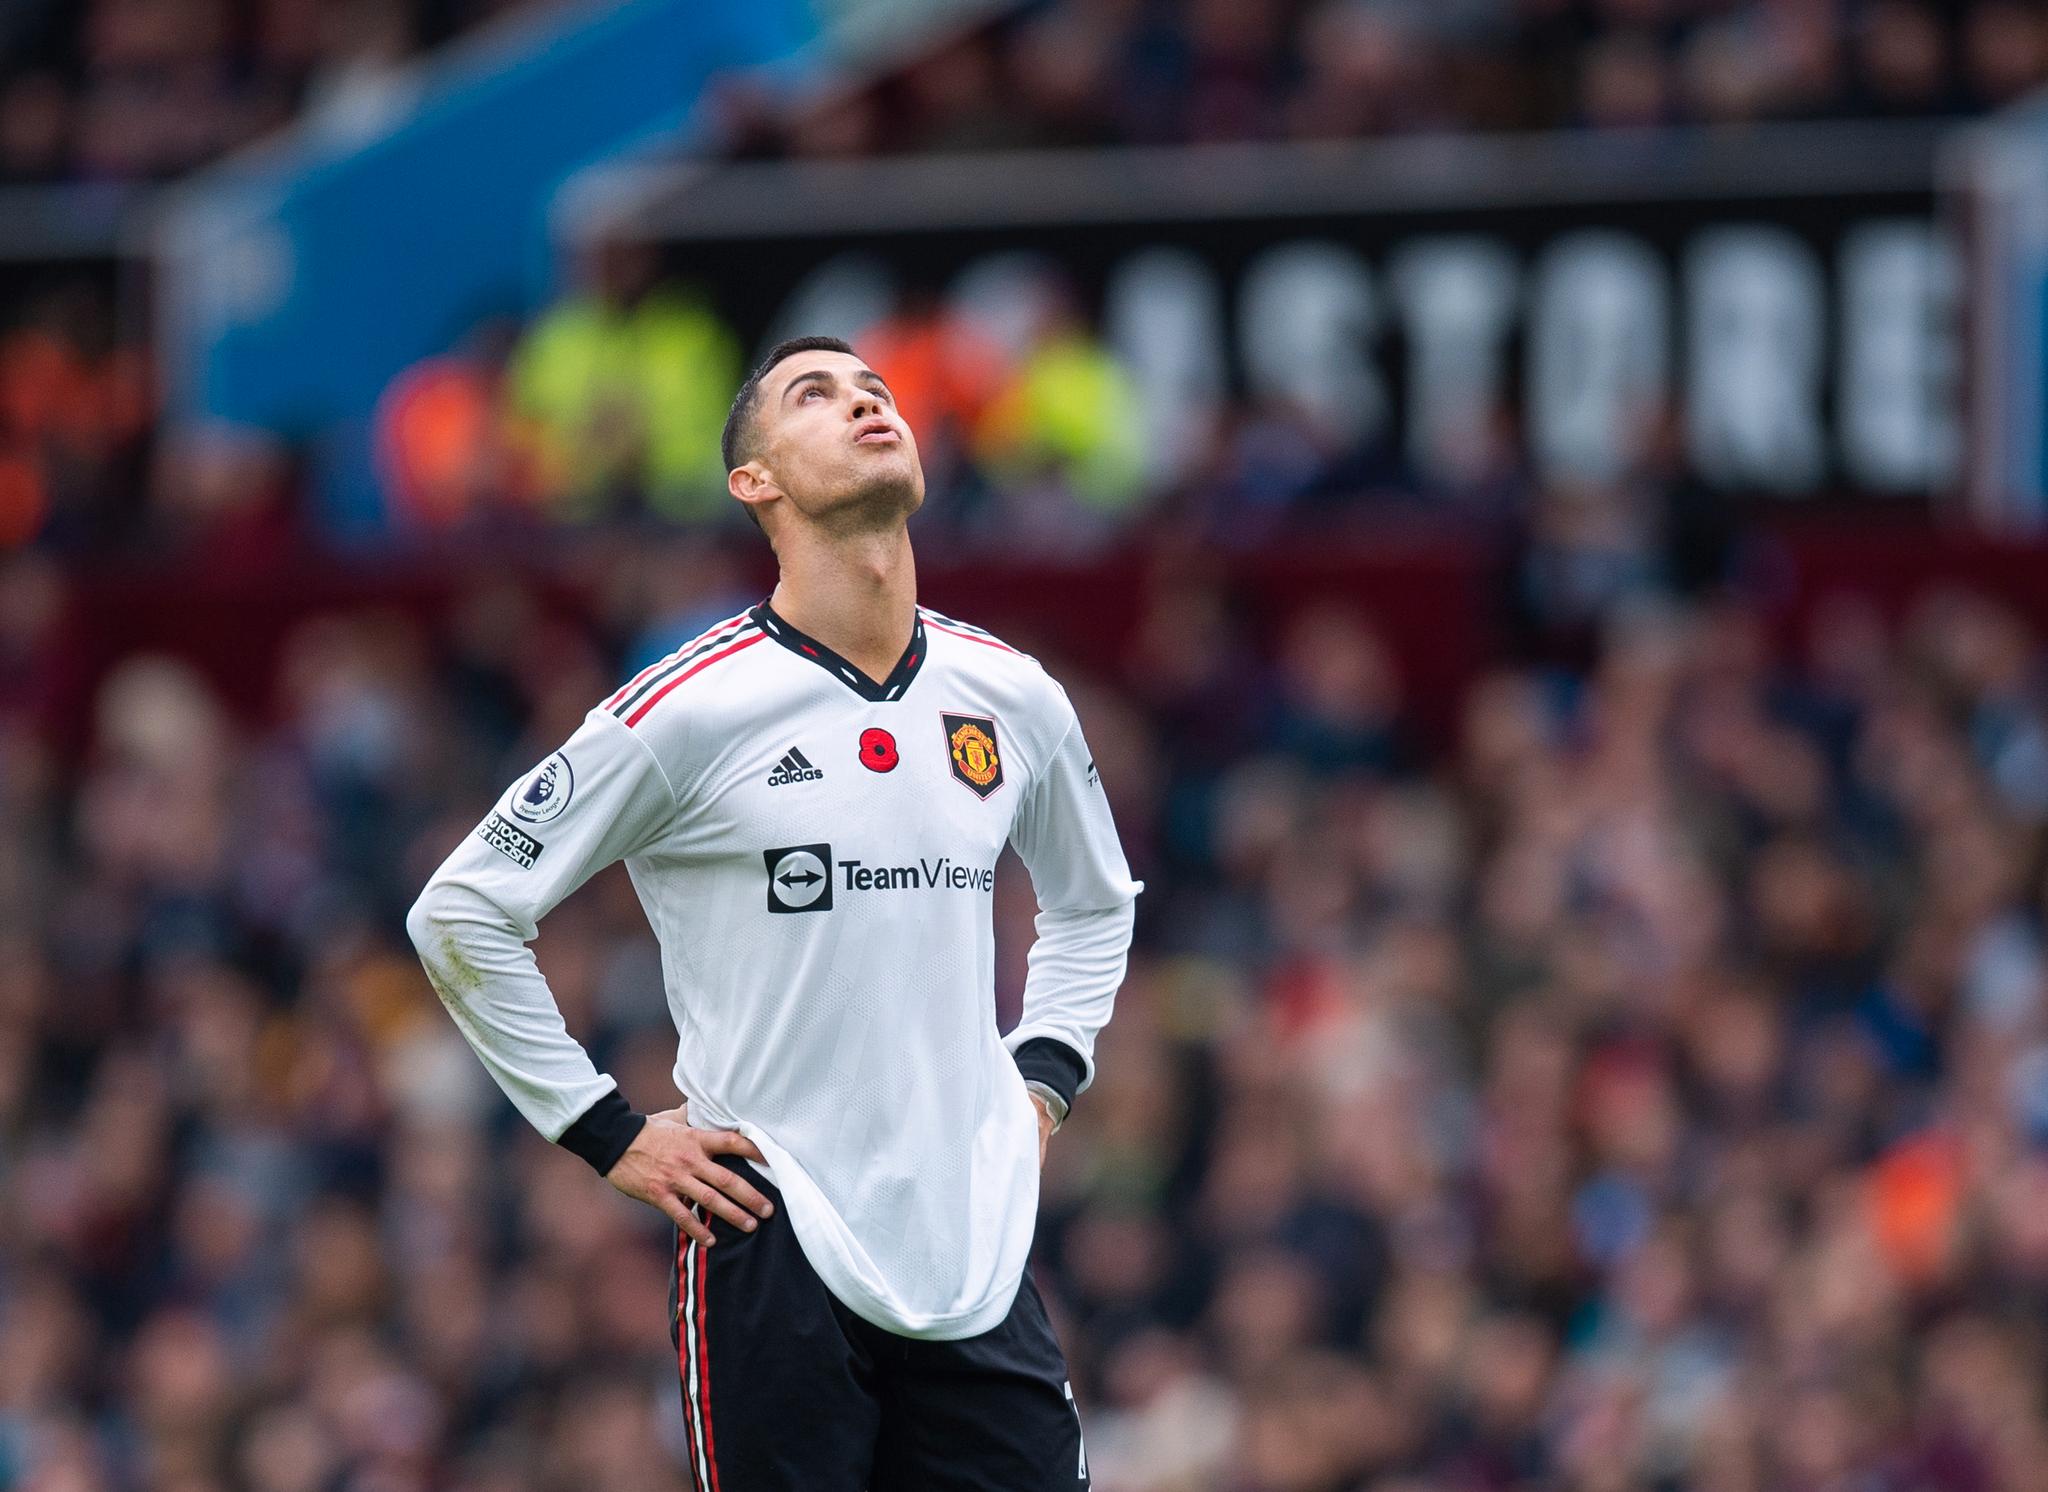 UTE – FOR GODT? Cristiano Ronaldo har vært ute av Manchester Uniteds tropp de siste to kampene. Nå skal han spille VM i Qatar for Portugal, hans femte verdensmesterskap.